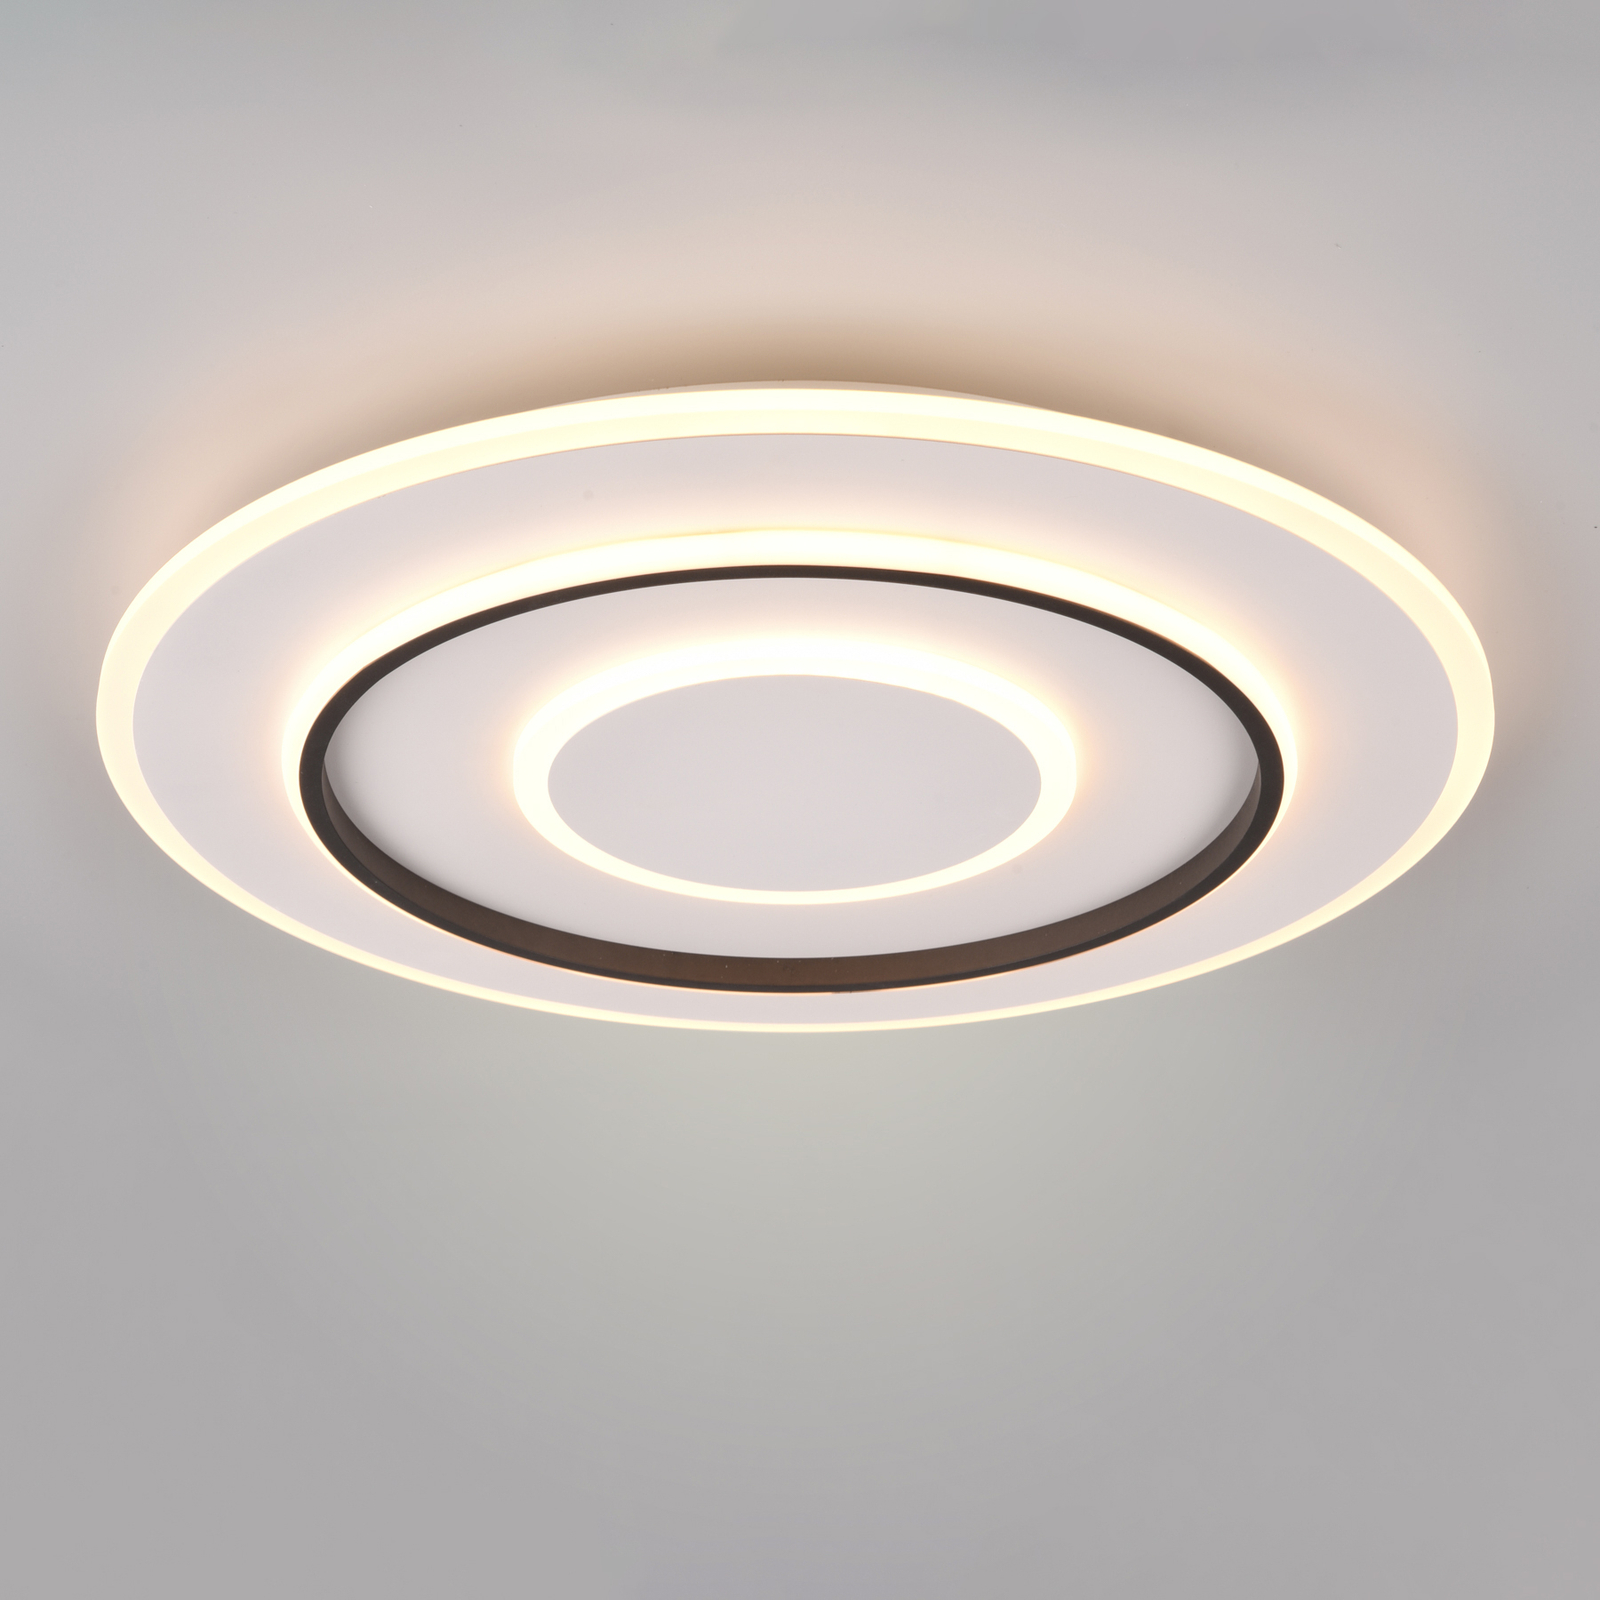 LED-Deckenlampe Jora rund Fernbedienung, Ø 60 cm